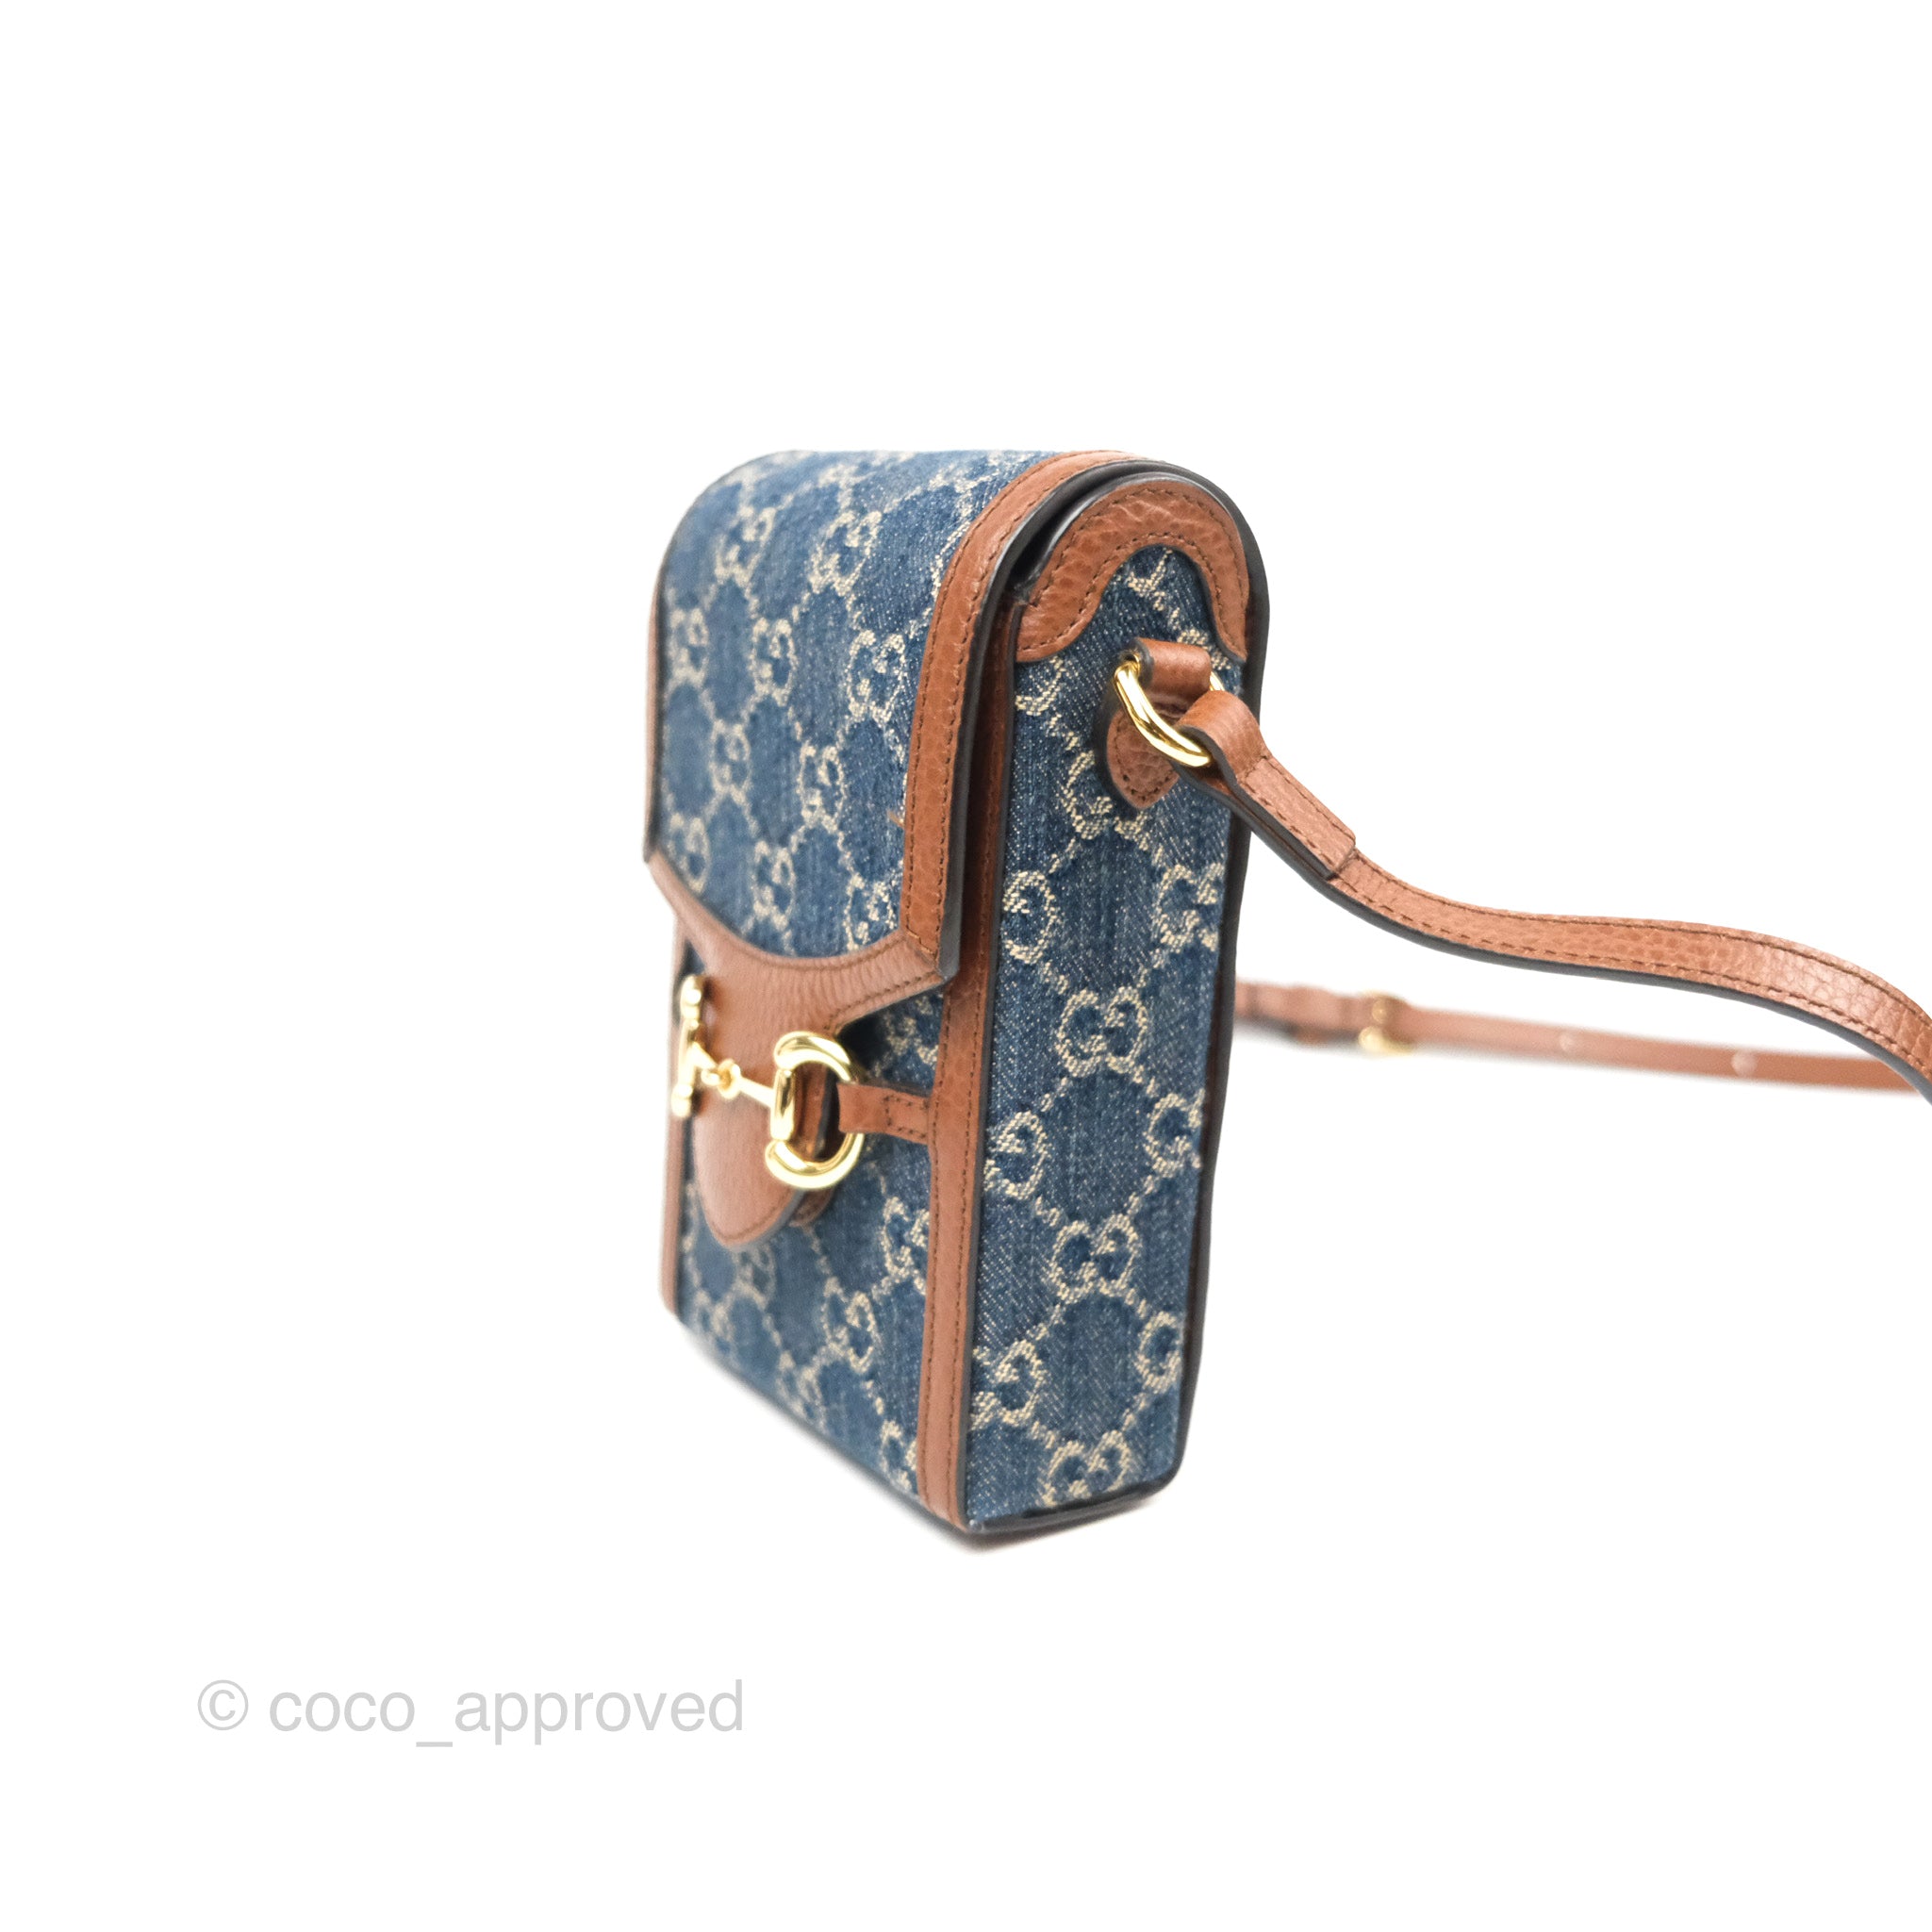 Gucci Horsebit 1955 mini bag